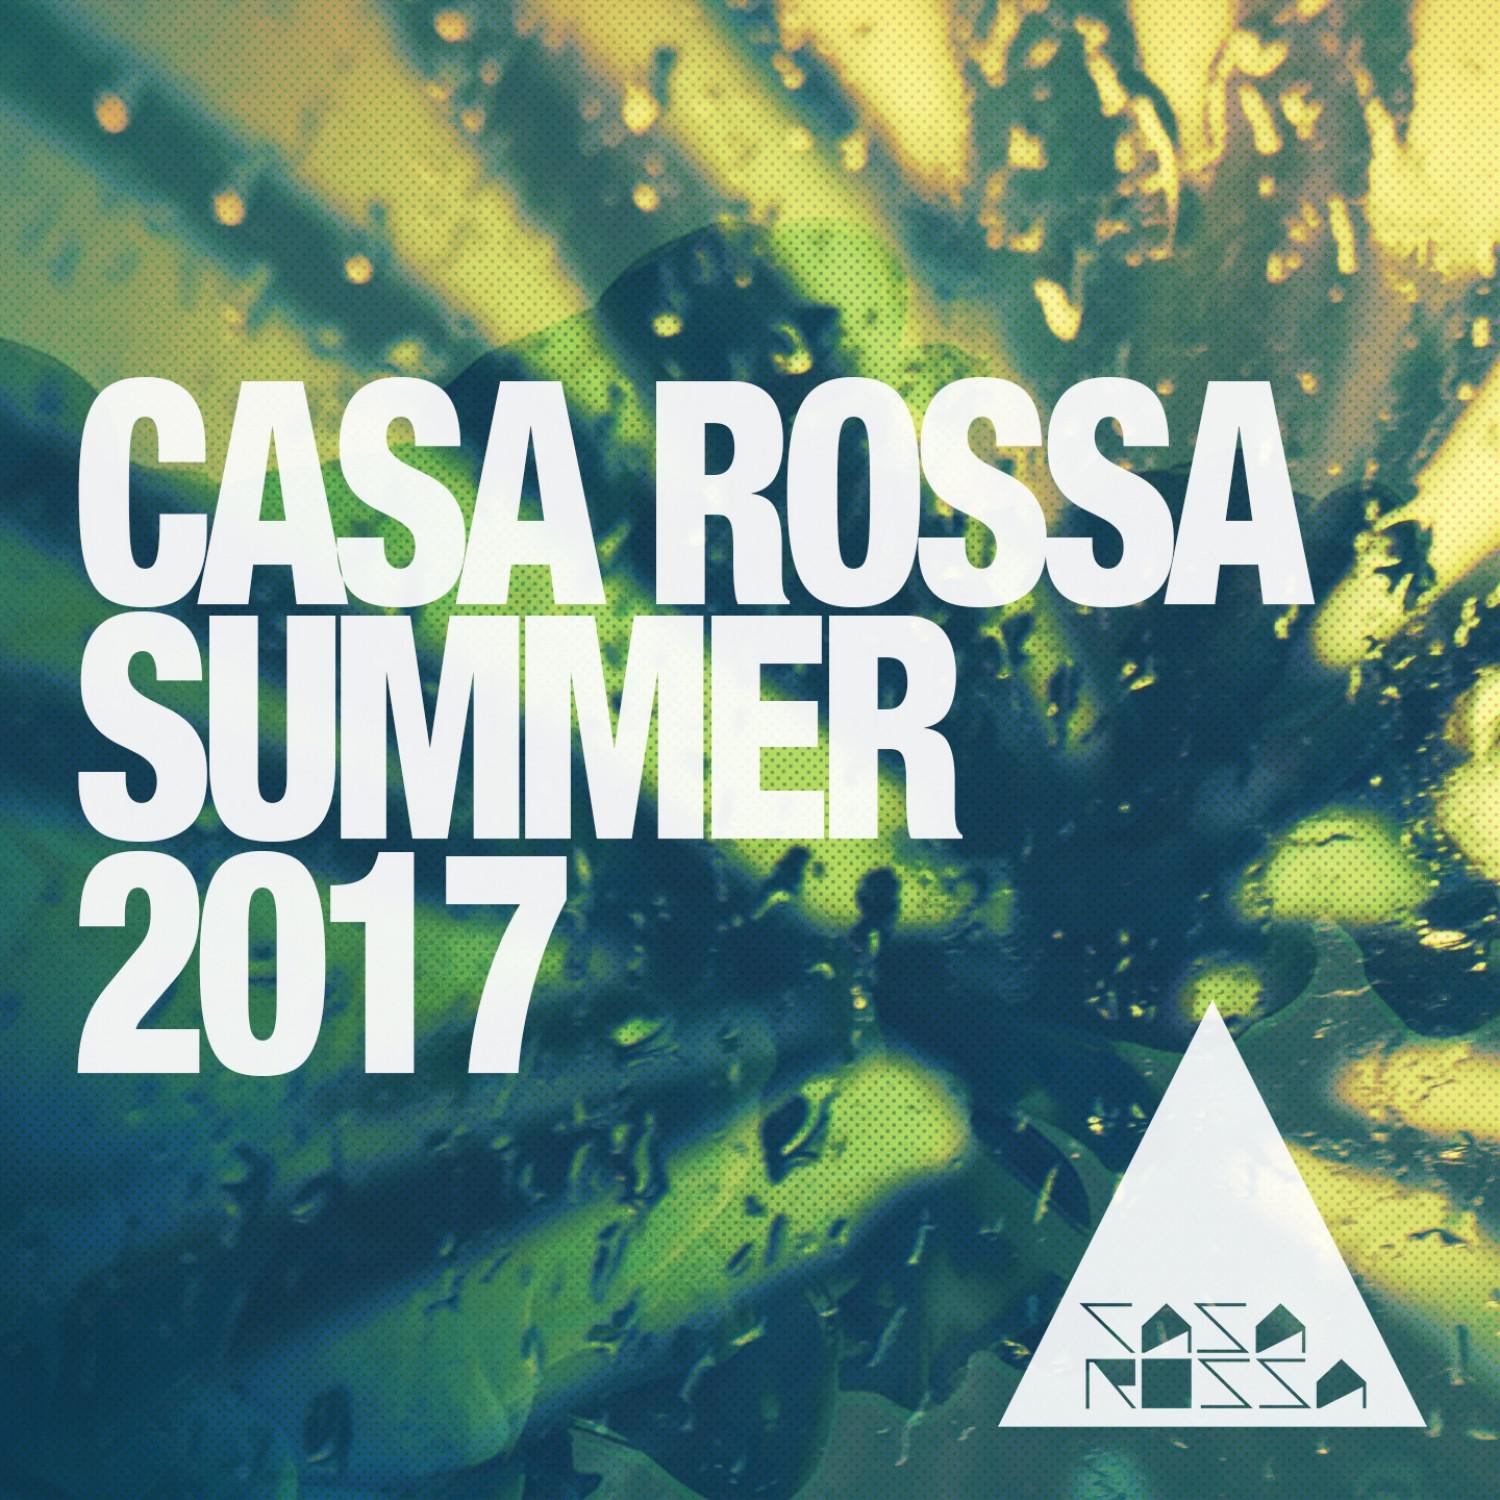 Casa Rossa Summer 2017: House Music